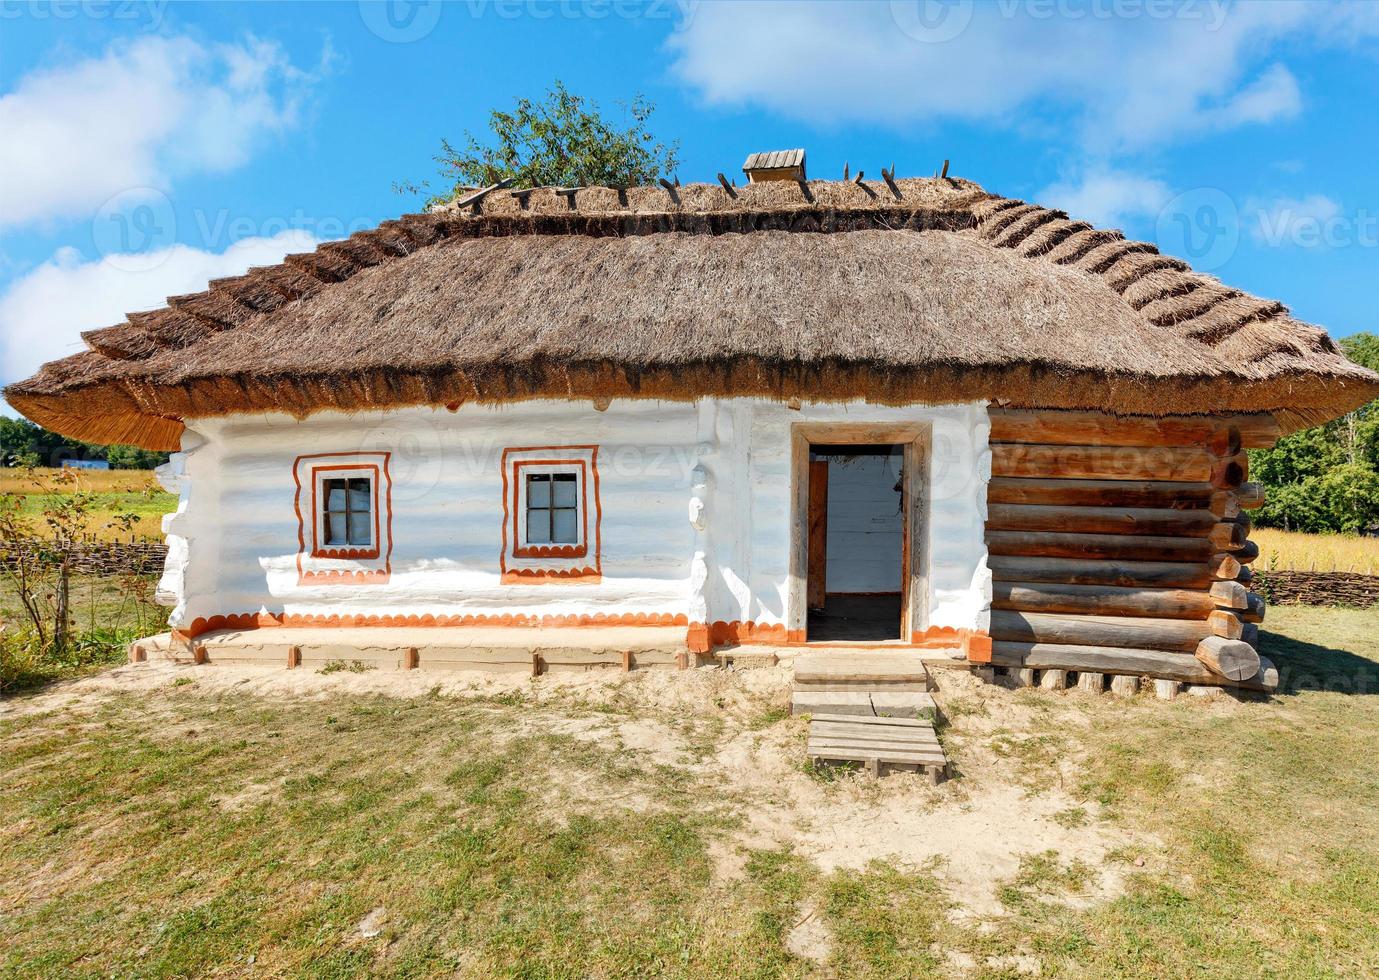 Fachada de una antigua casa rural tradicional ucraniana con techo de paja  en un día de verano contra un cielo azul. 4708138 Foto de stock en Vecteezy